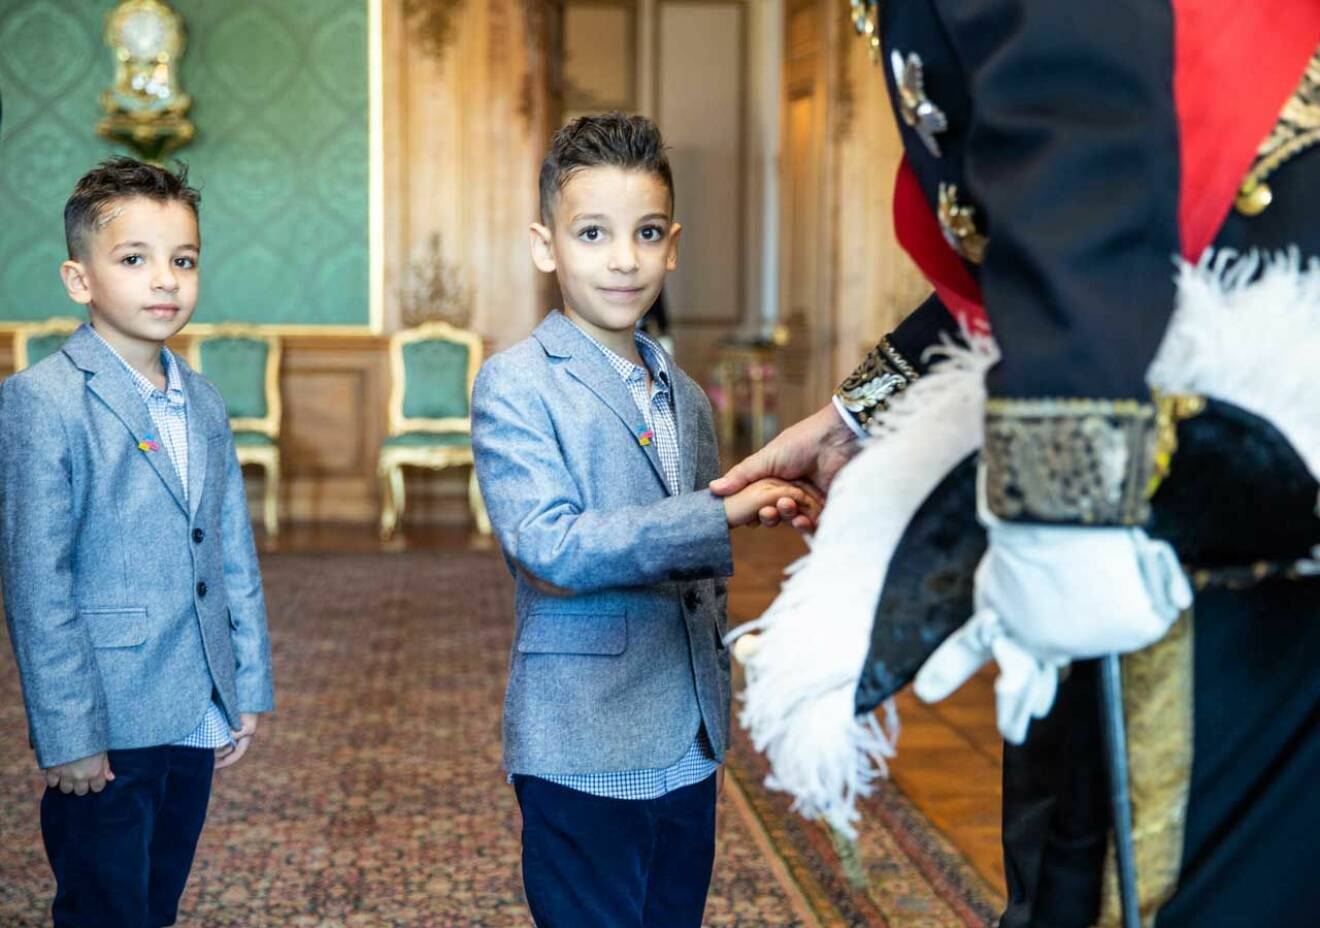 En dröm som gick i uppfyllelse. Leukemisjuke Akram, 7 år, fick träffa kungen på slottet tillsammans med sin bror.